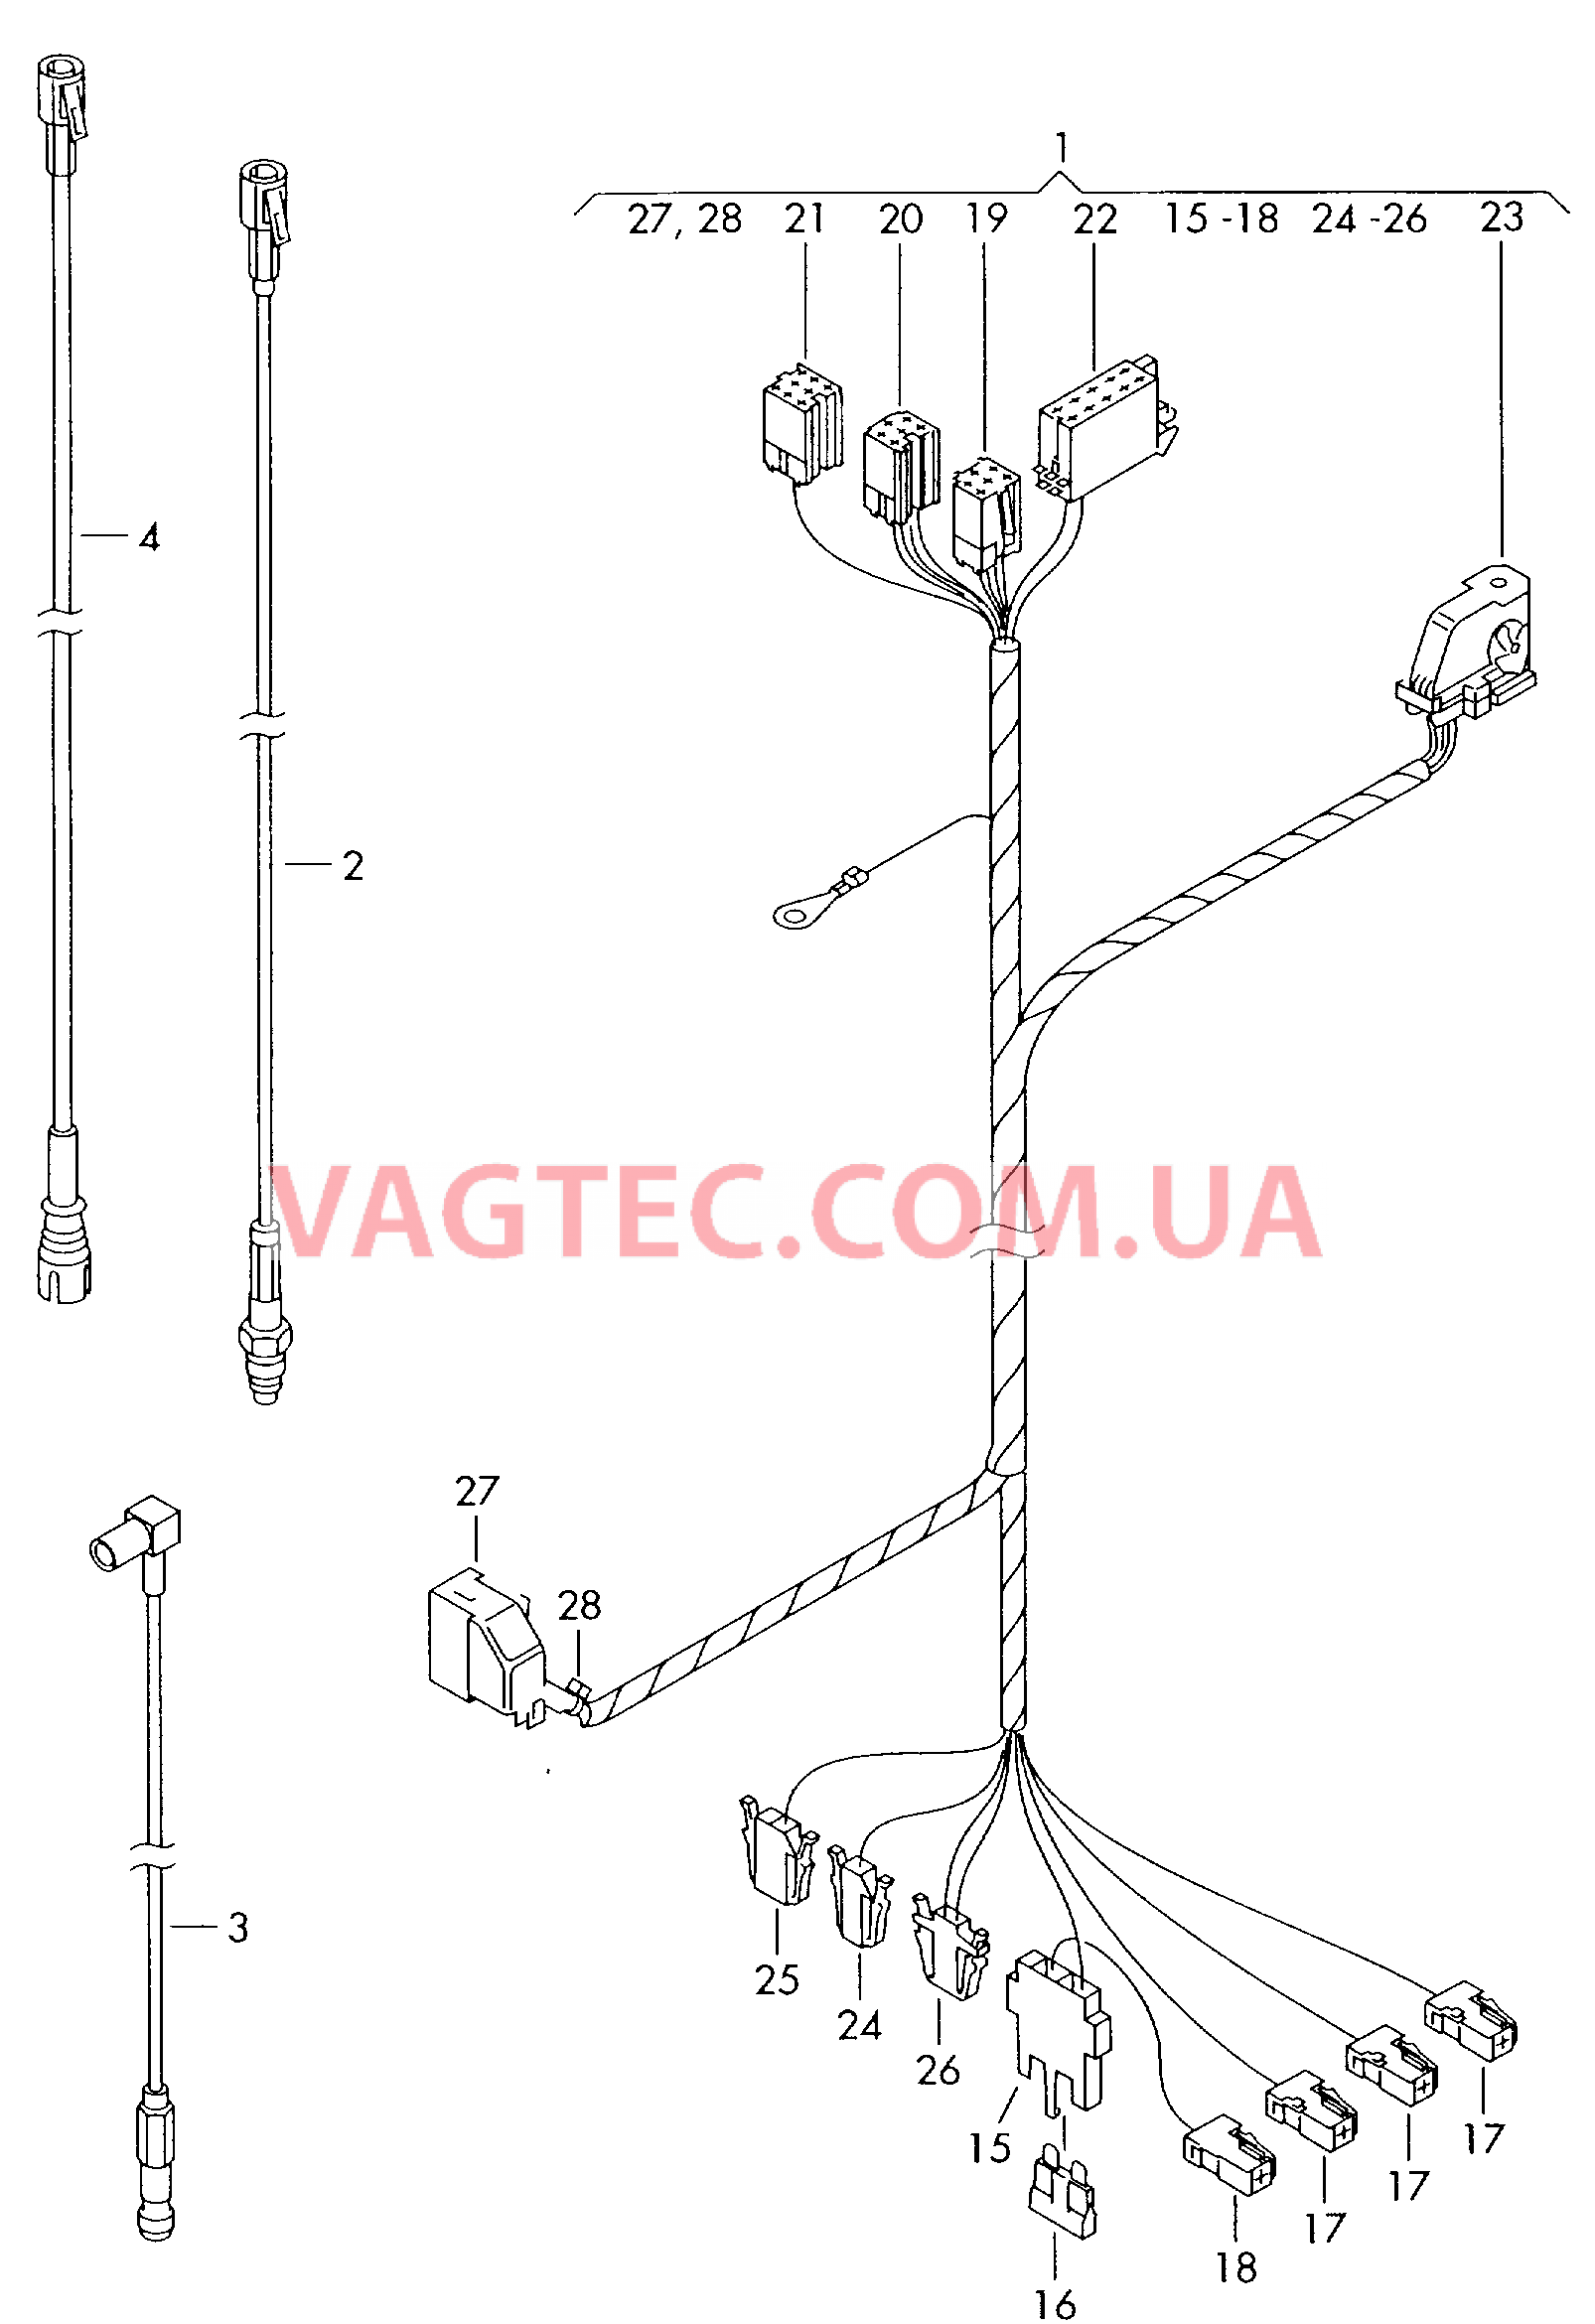 Жгут проводов системы навигации  Антенный кабель                   см. каталог:  для VOLKSWAGEN Transporter 2001